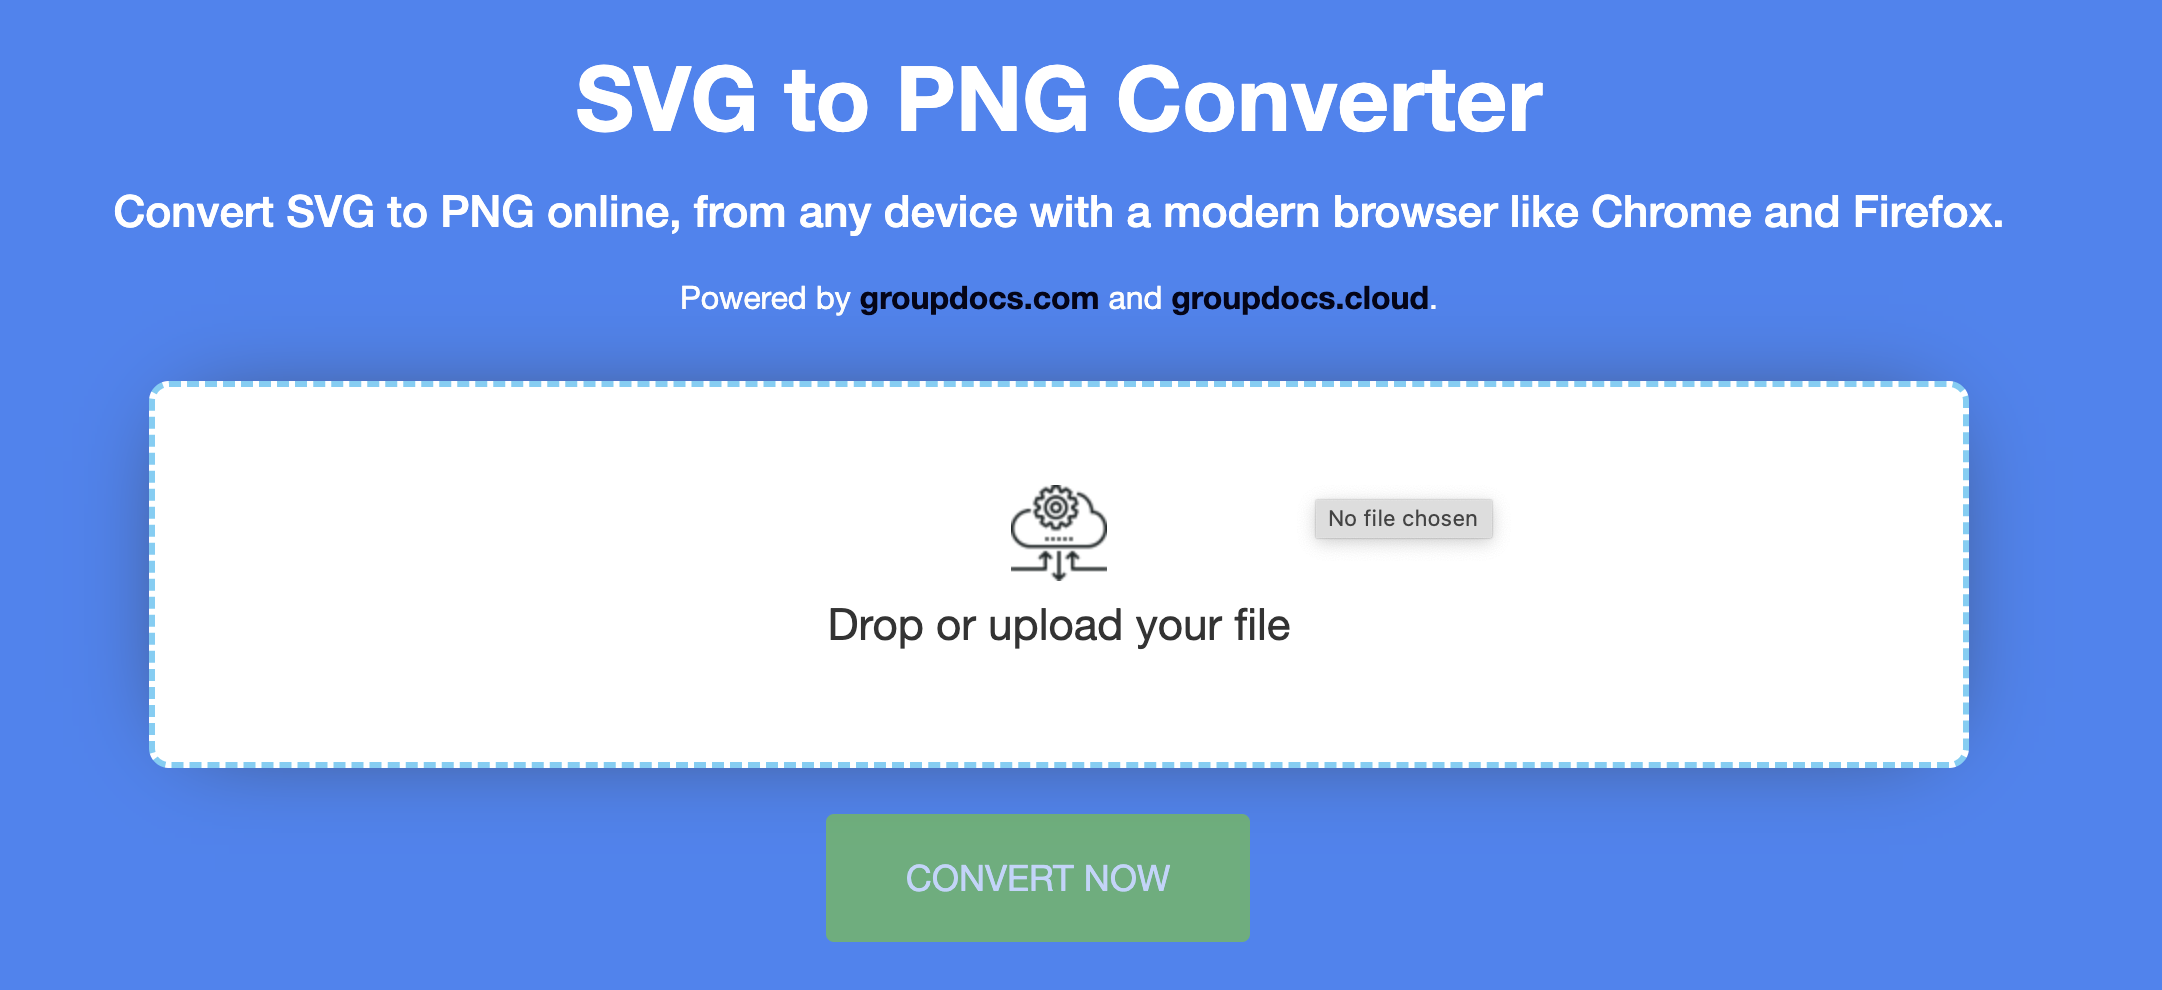 SVG'yi çevrimiçi olarak PNG'ye dönüştürün